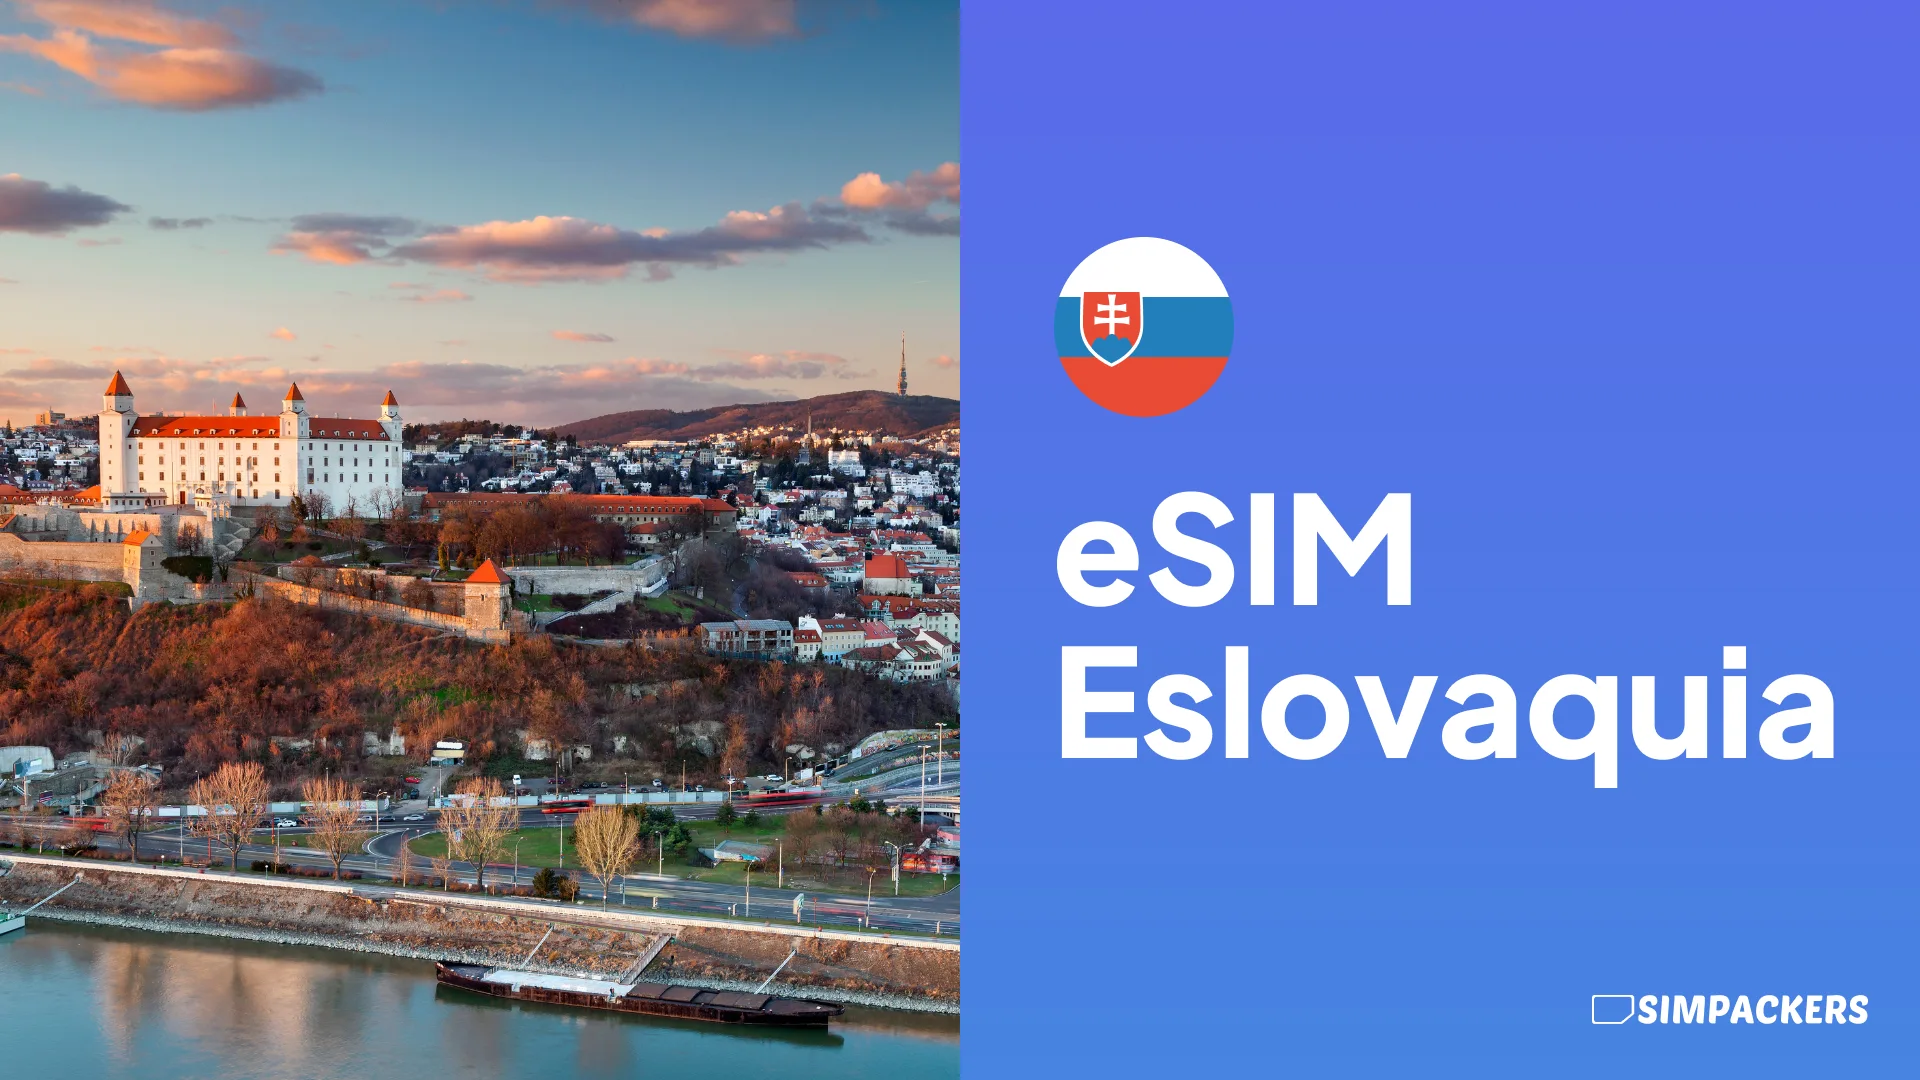 ES/FEATURED_IMAGES/esim-eslovaquia.webp